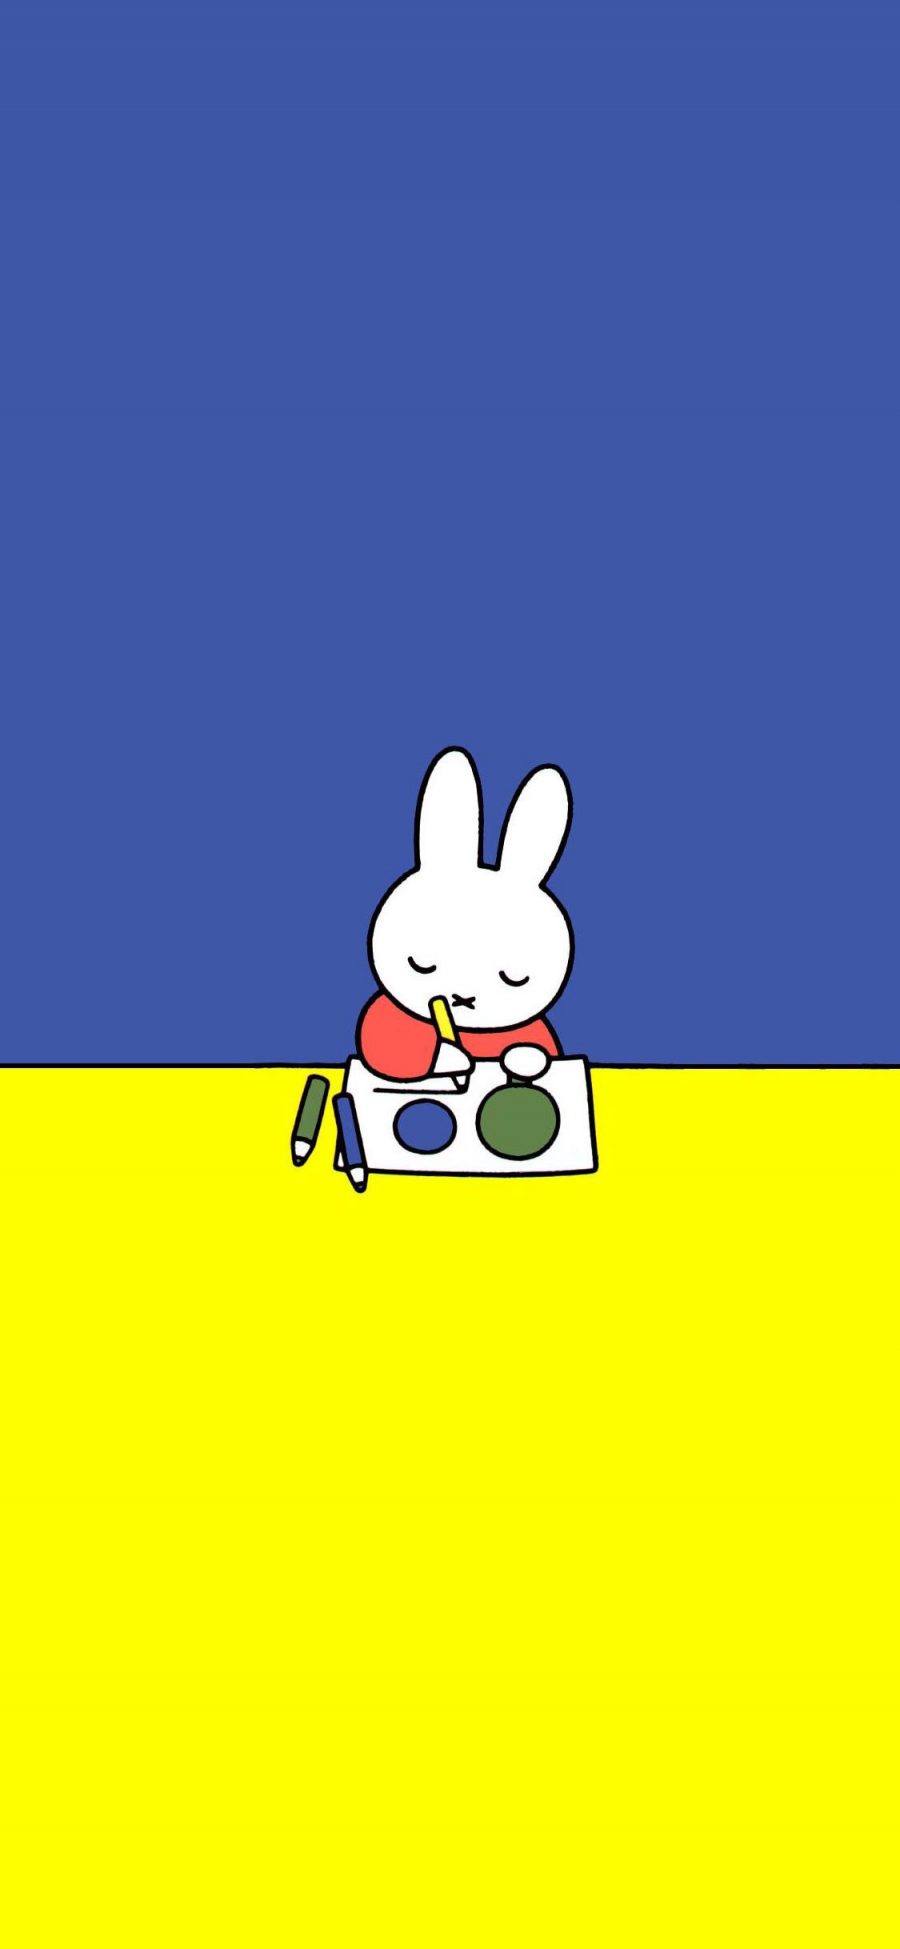 [2436×1125]米菲兔 可爱 兔子 卡通 色彩 苹果手机动漫壁纸图片